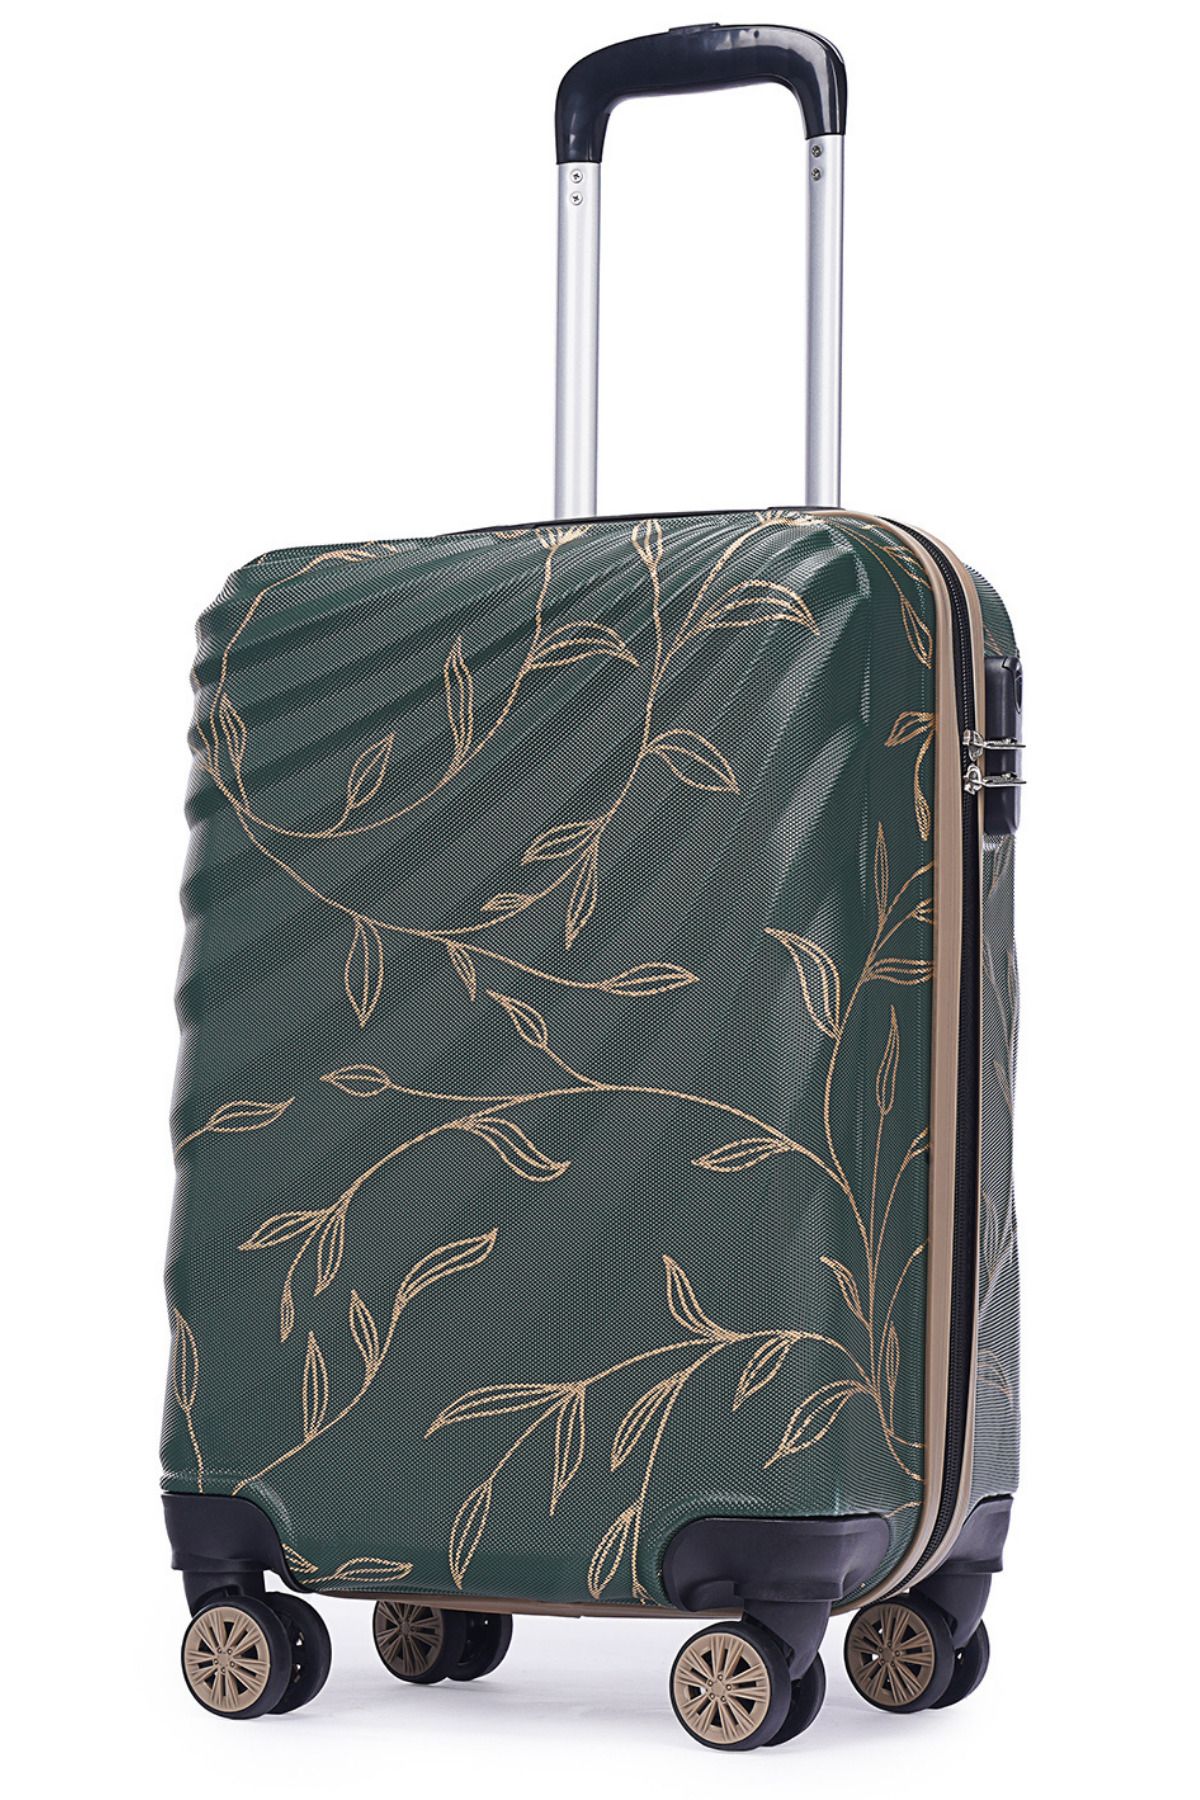 Wexta Wx-300 Yaprak Baskılı Yağ Yeşili Kabin Boy Valiz / Seyahat Bavulu